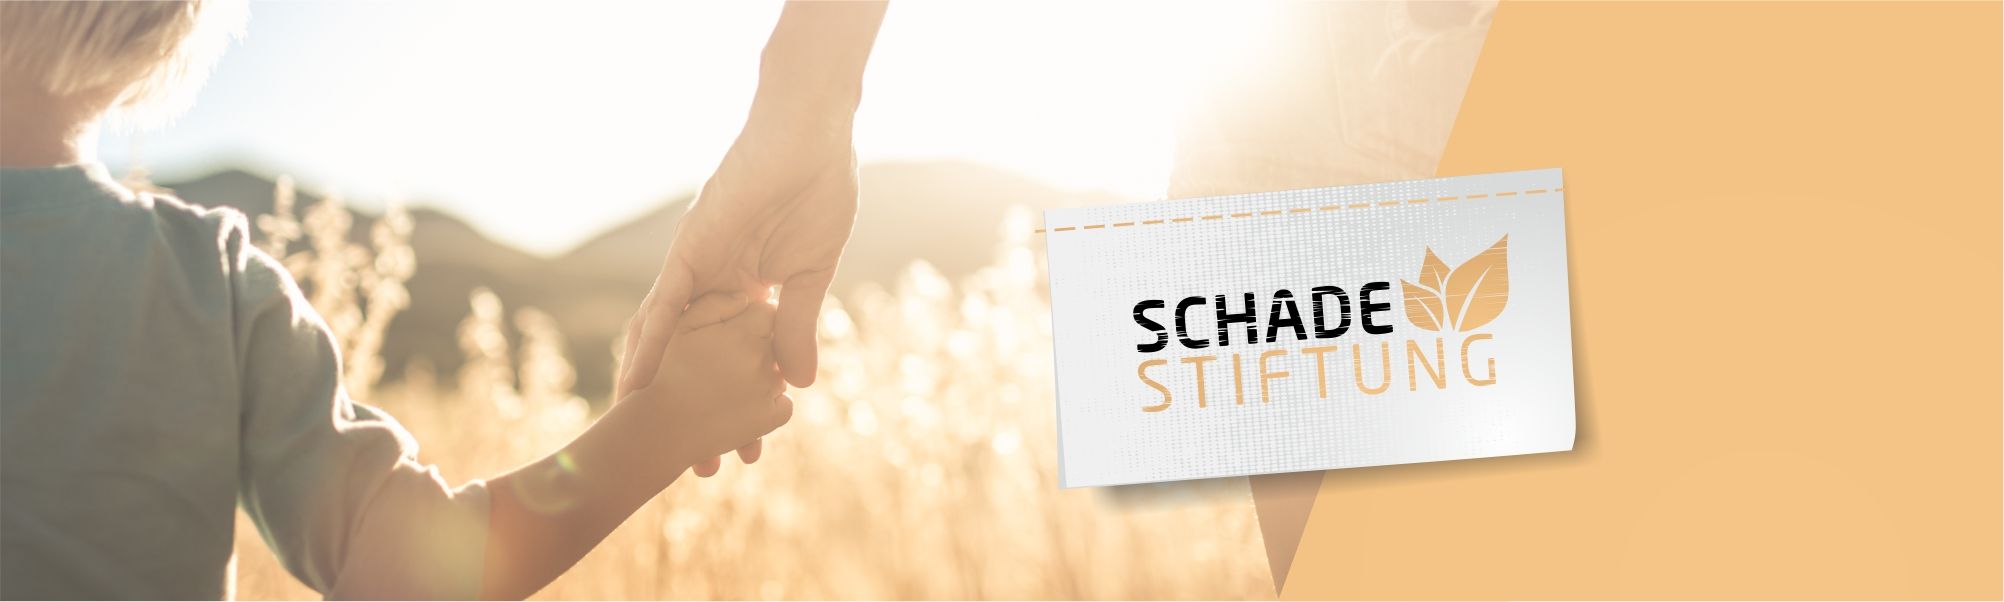 SCHADE Stiftung - Gemeinsam Gutes tun